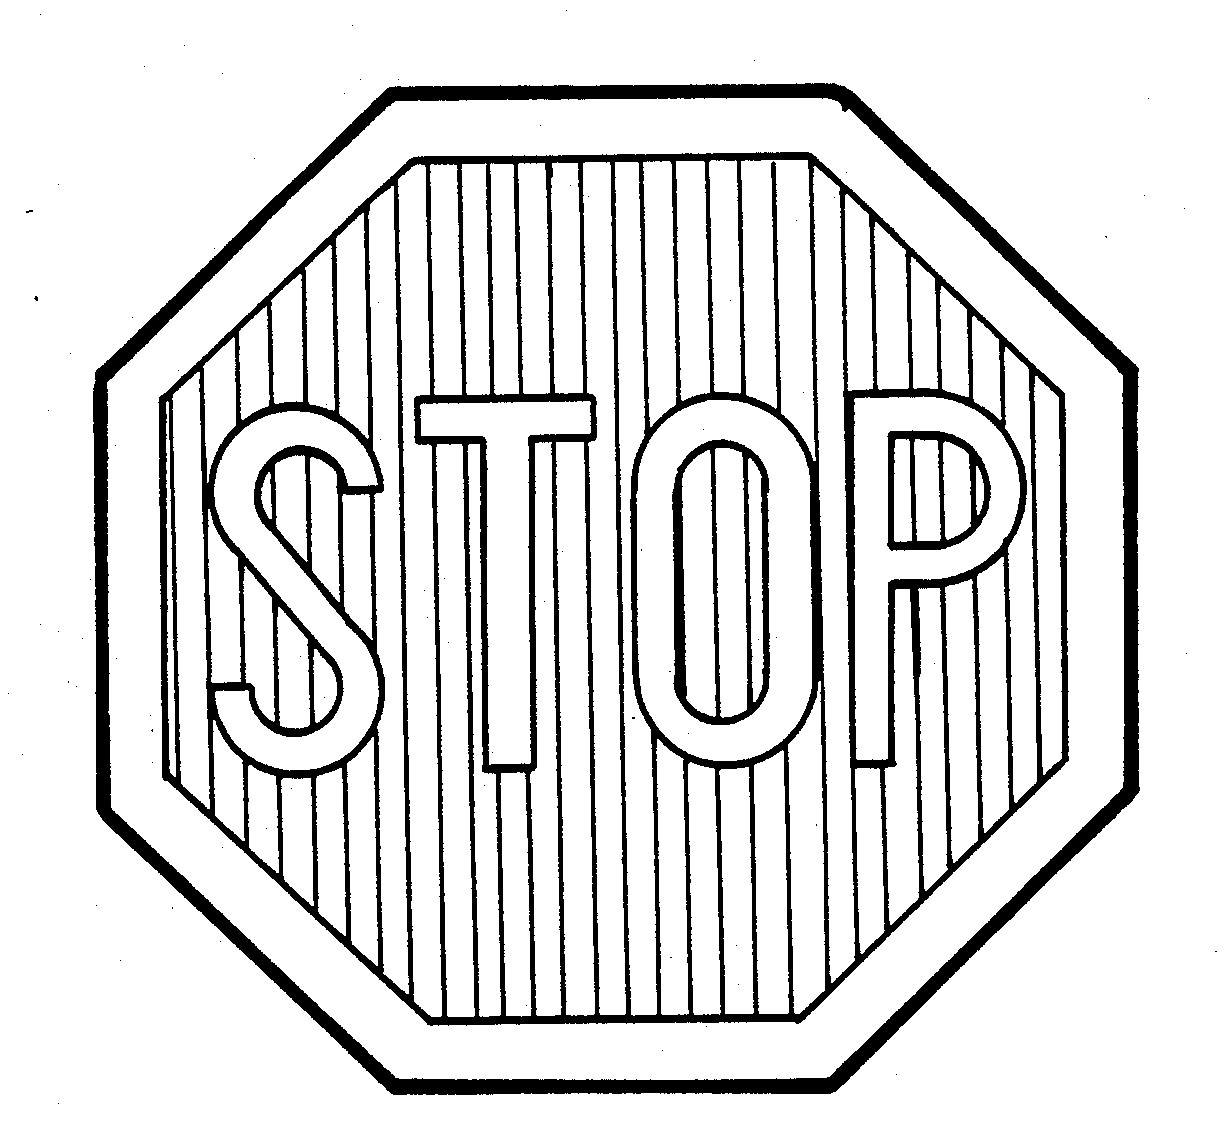  STOP